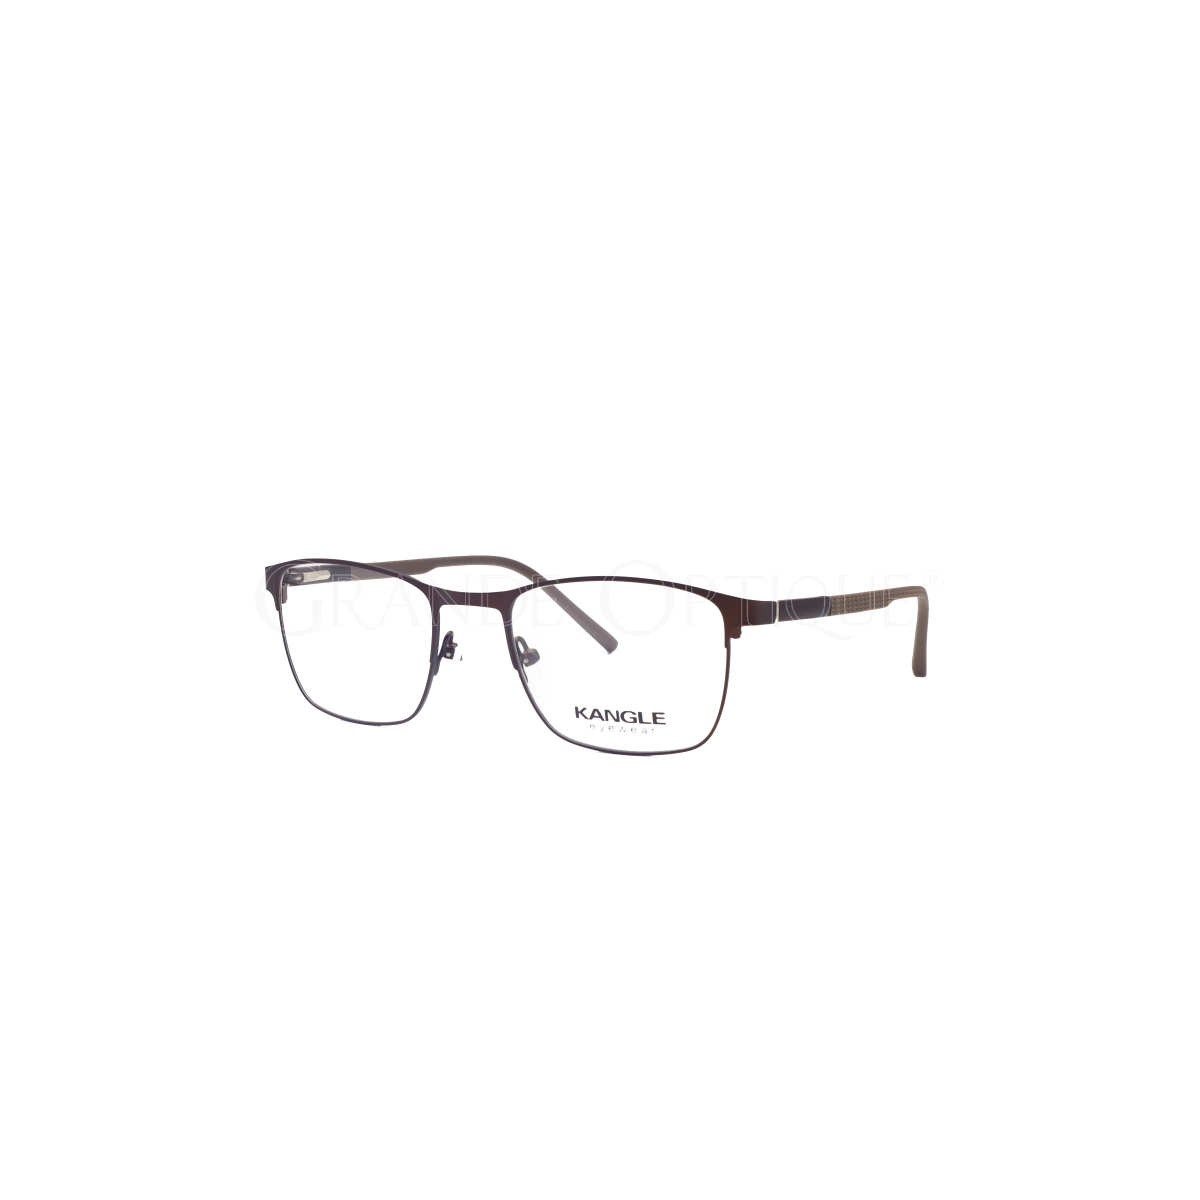 Rame ochelari Kangle HB07-14